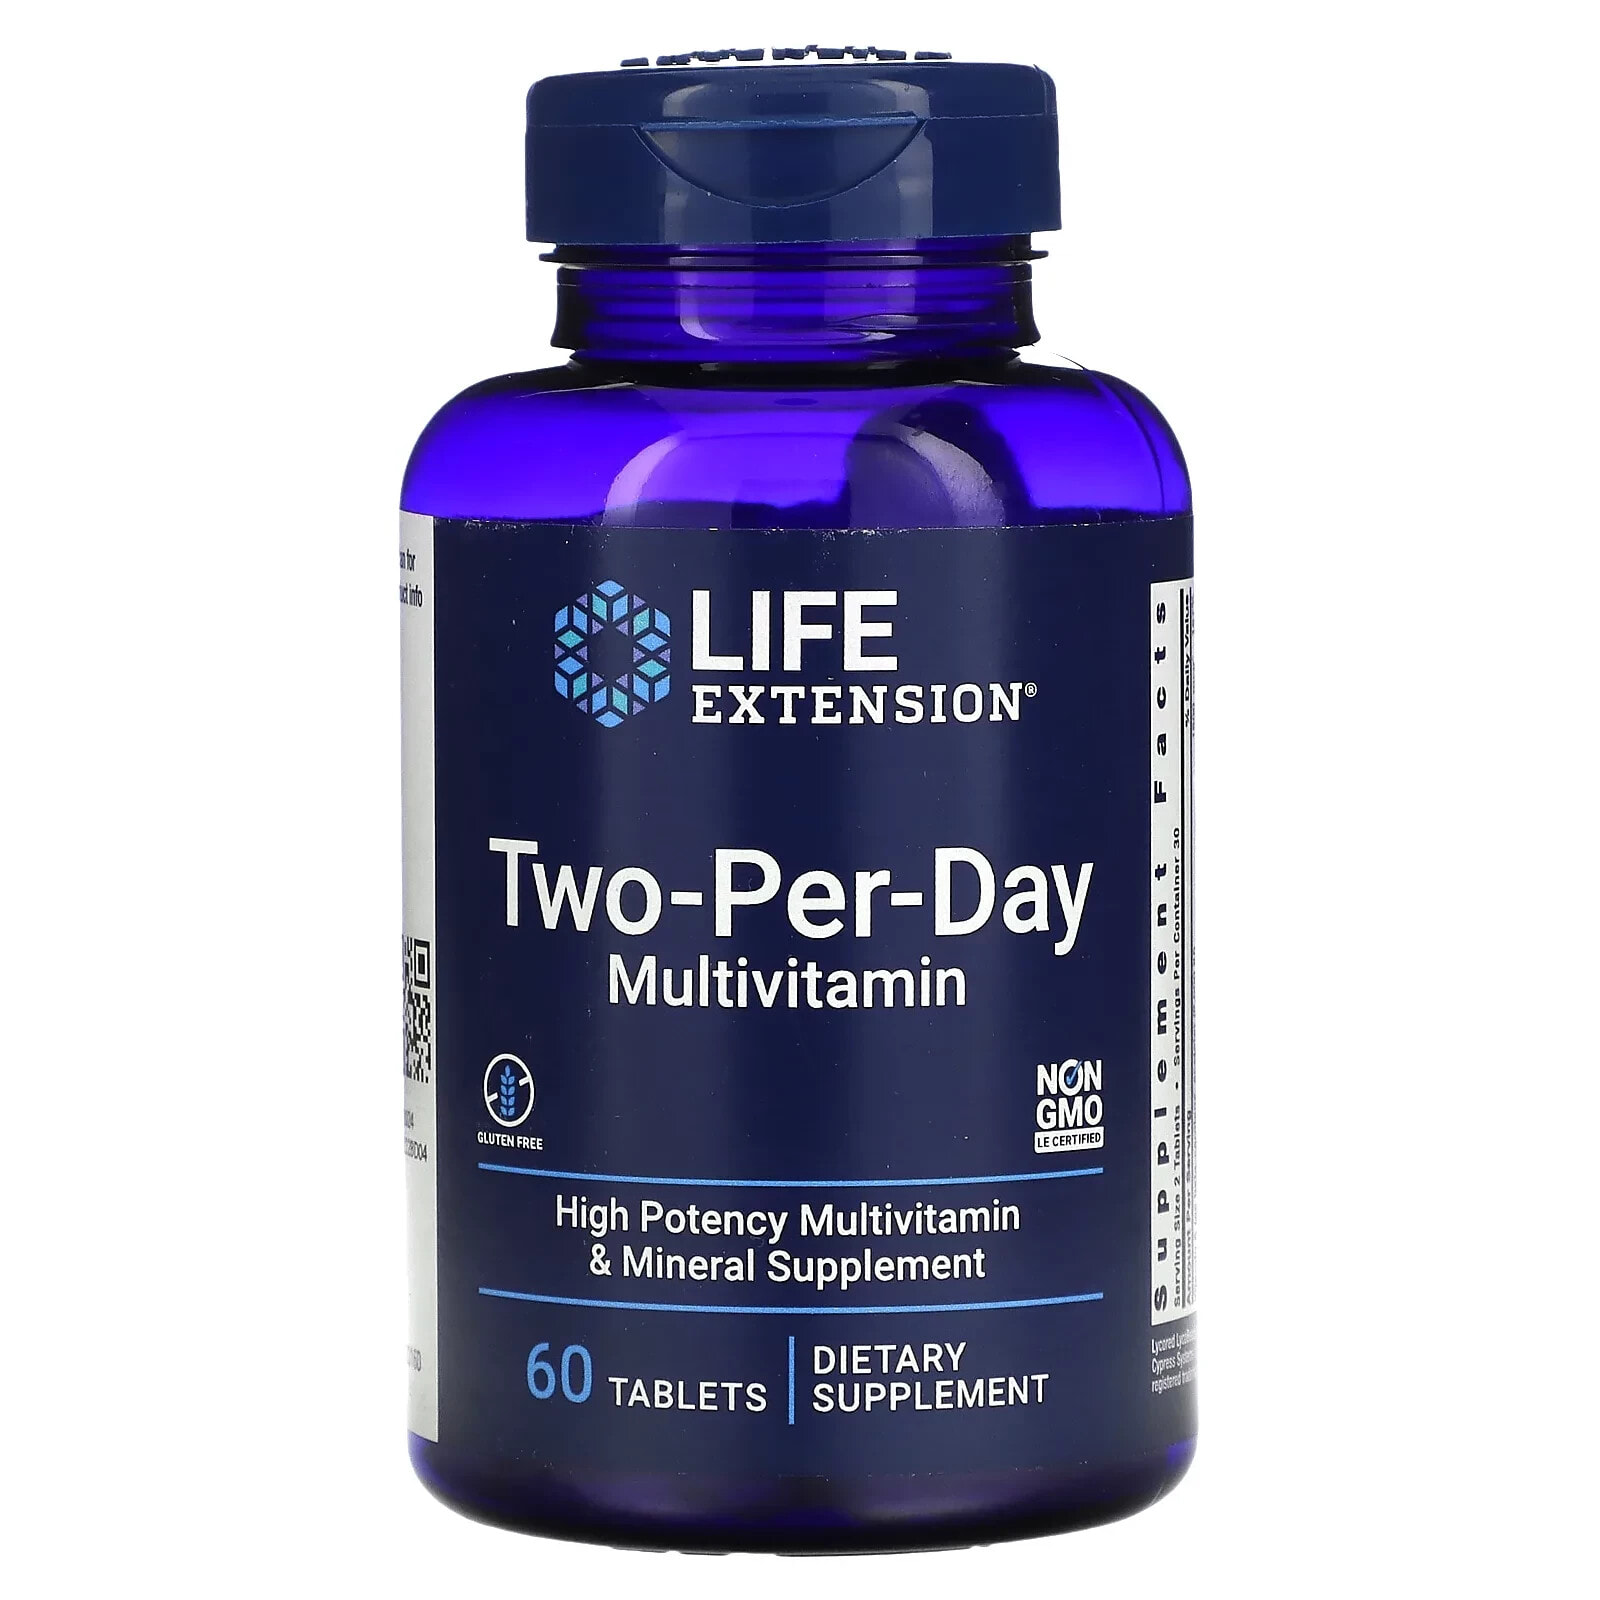 Life Extension, Мультивитамины для двух приемов в день, 120 таблеток